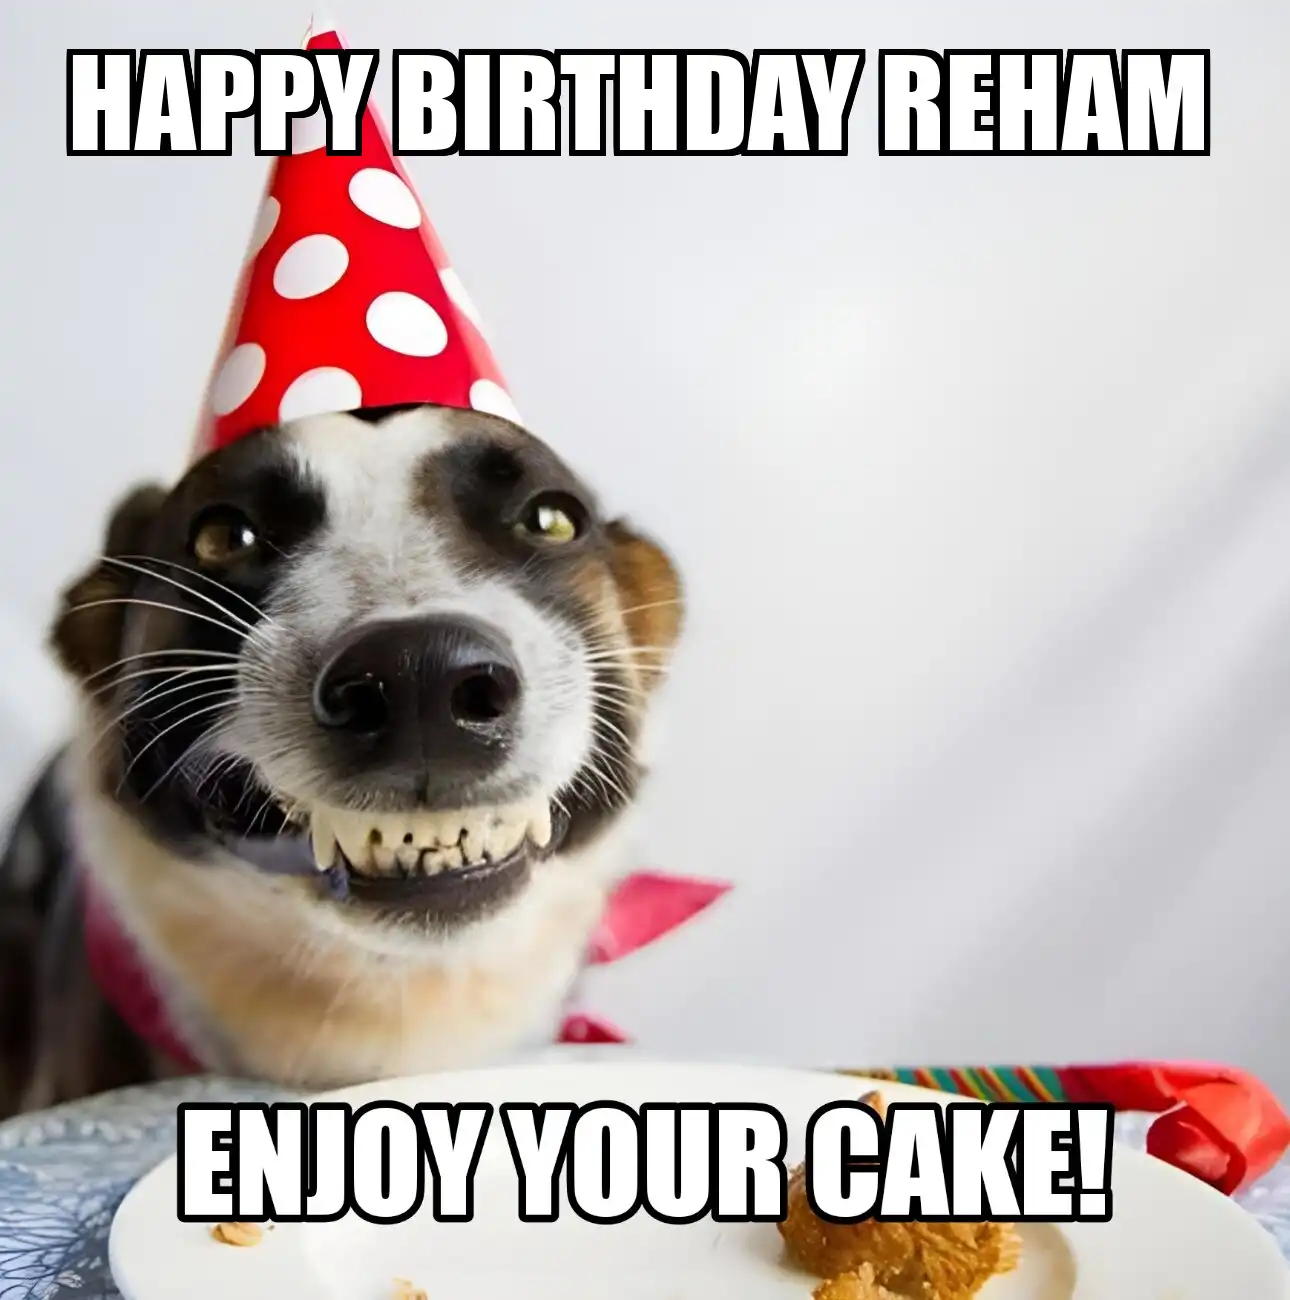 Happy Birthday Reham Enjoy Your Cake Dog Meme